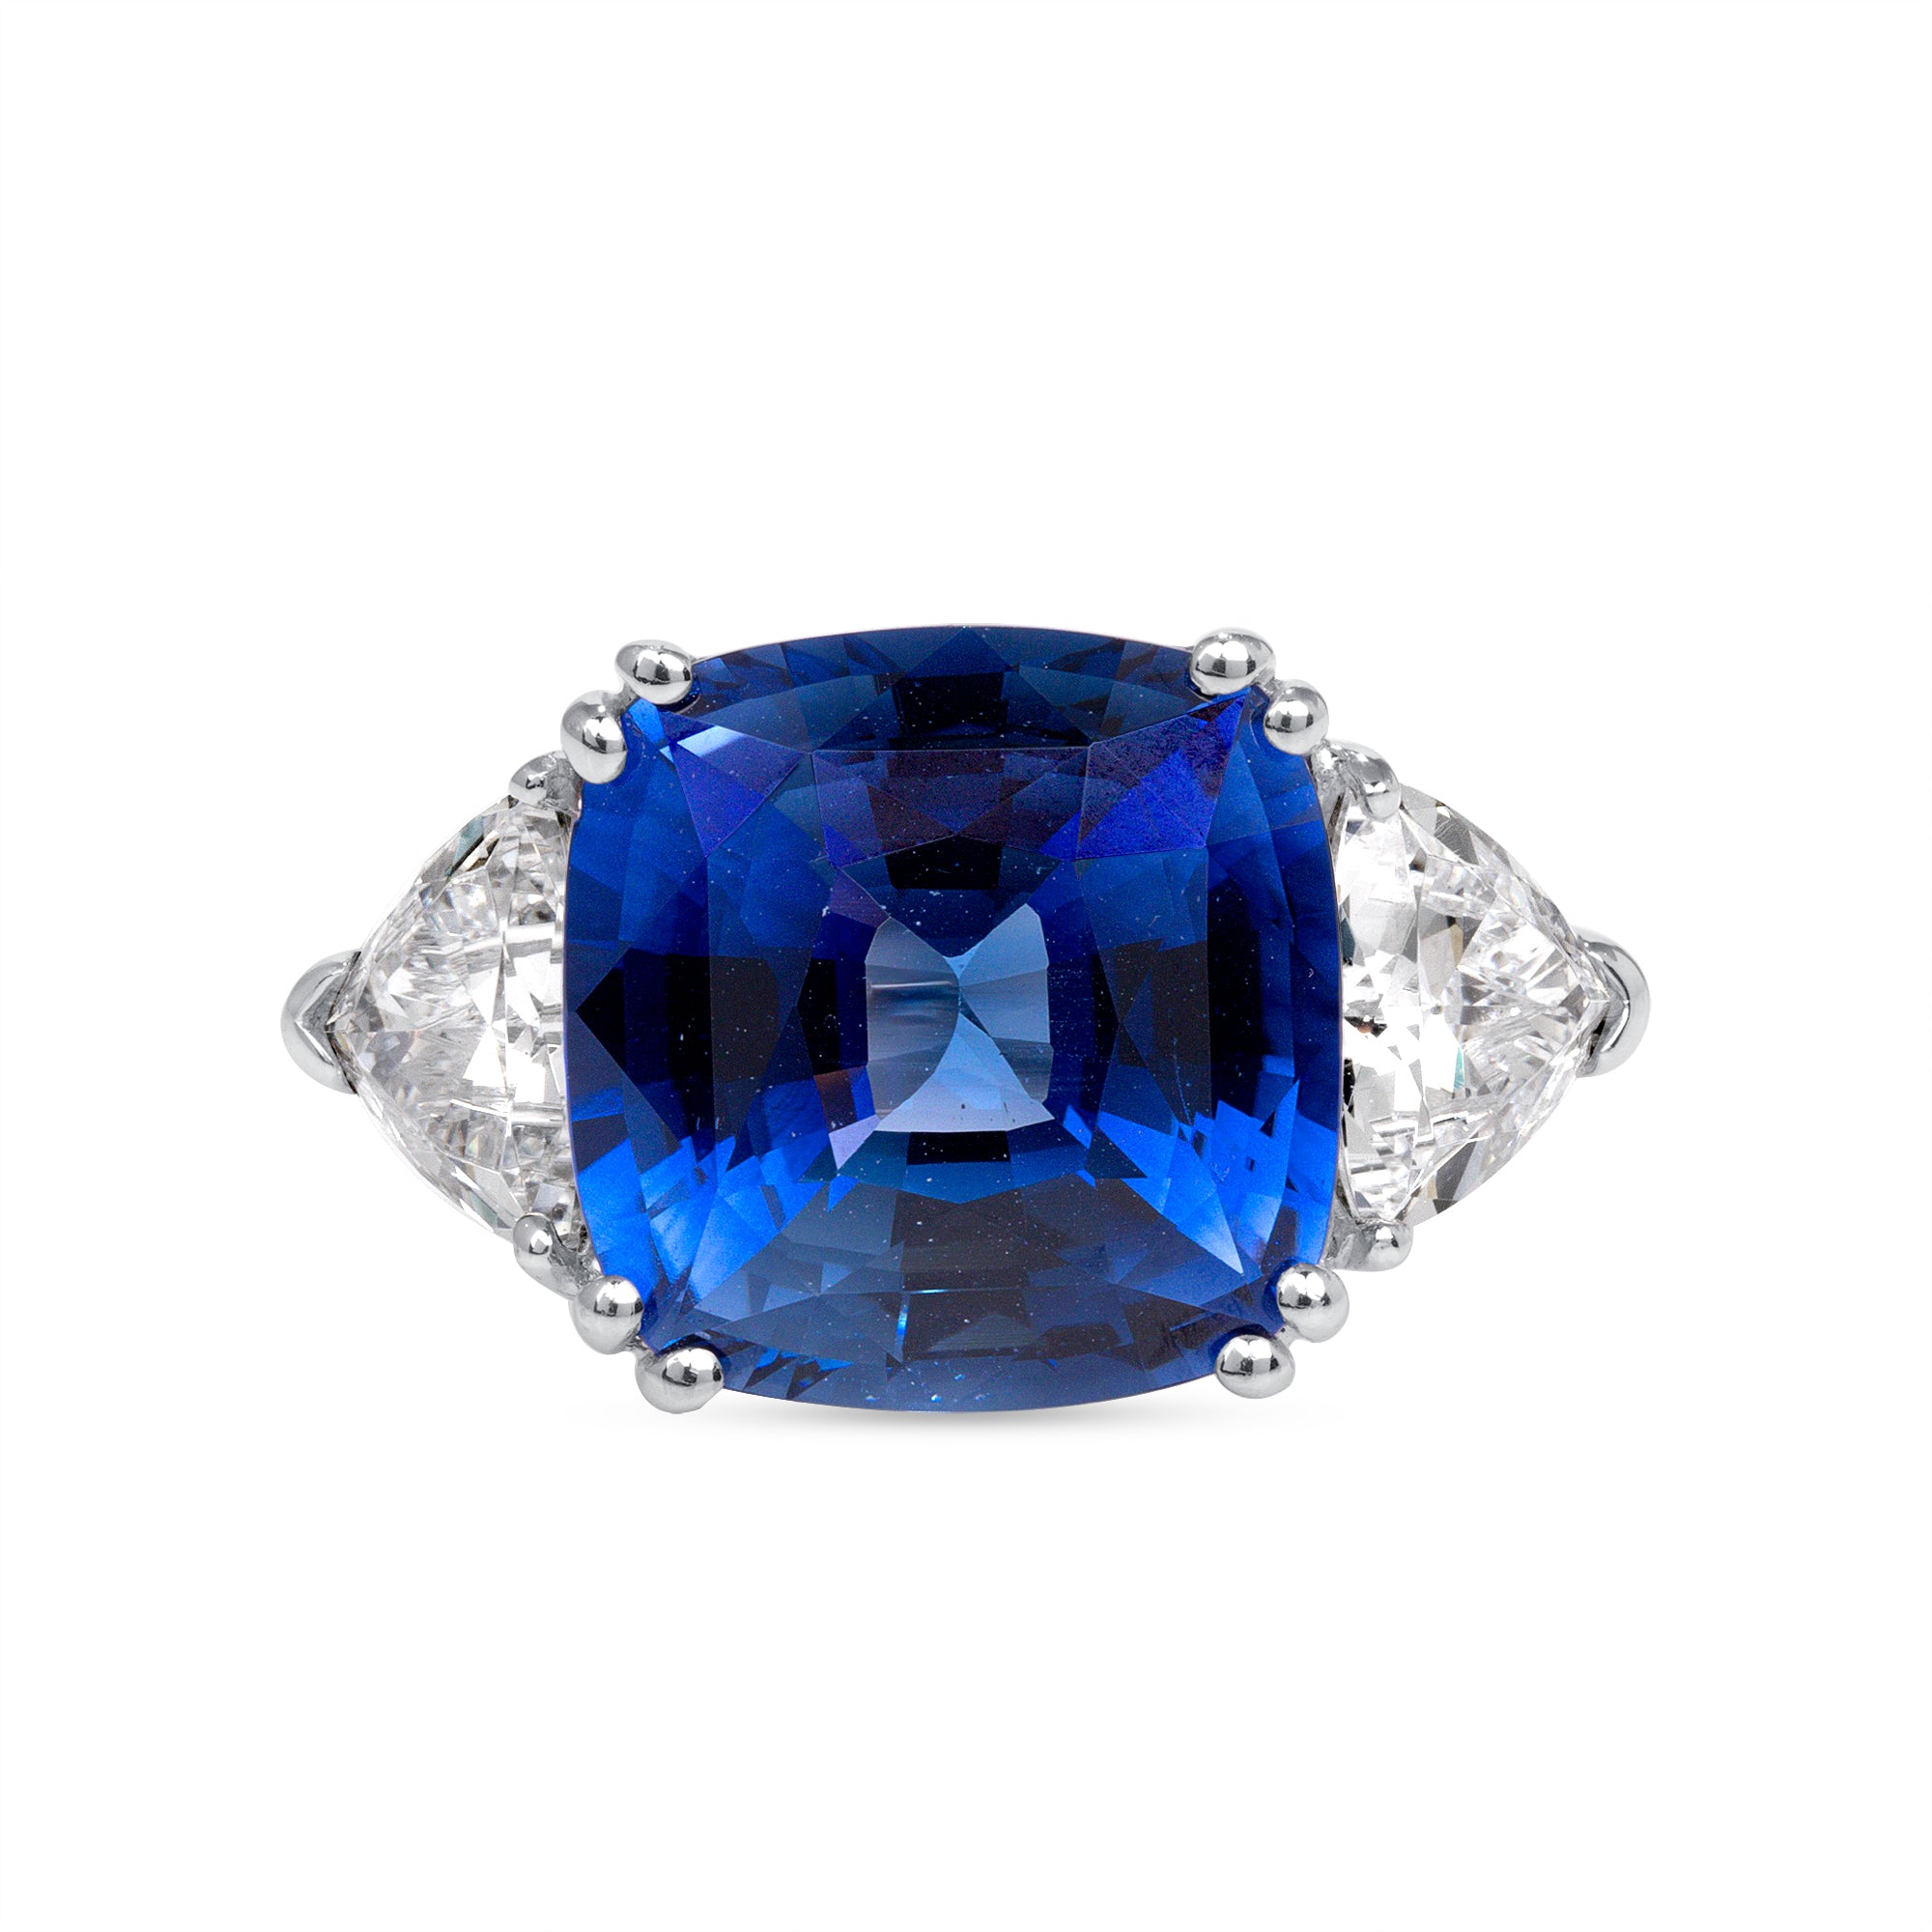 Cushion Cut Blue Sapphire and Trillion Cut Diamond Three Stone Ring